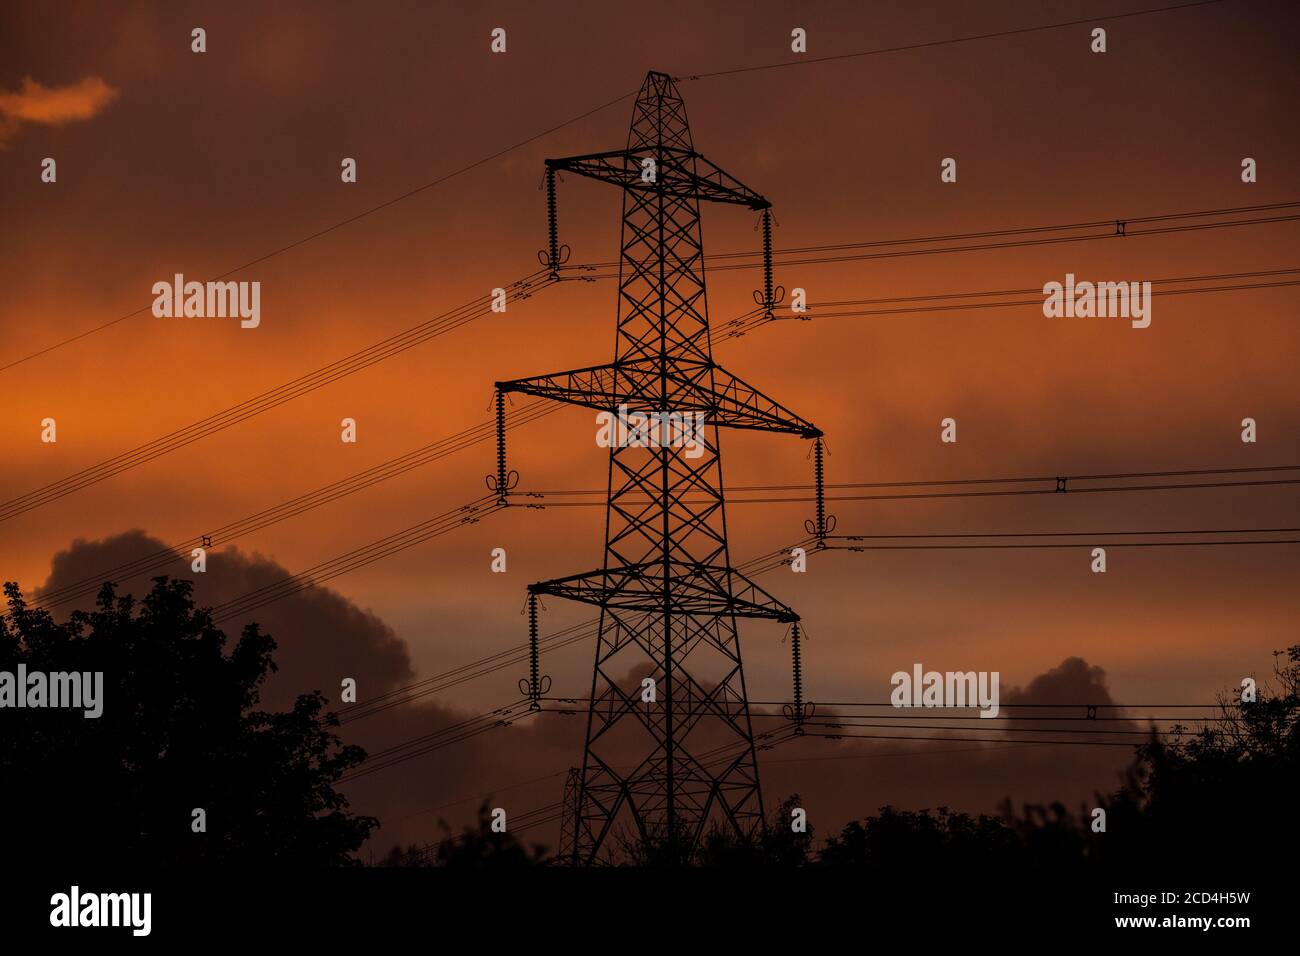 Pylônes d'électricité alimentant la région de l'ouest du pays de Galles lors d'une soirée où les couchers de soleil une orange profonde parmi les nuages. Banque D'Images